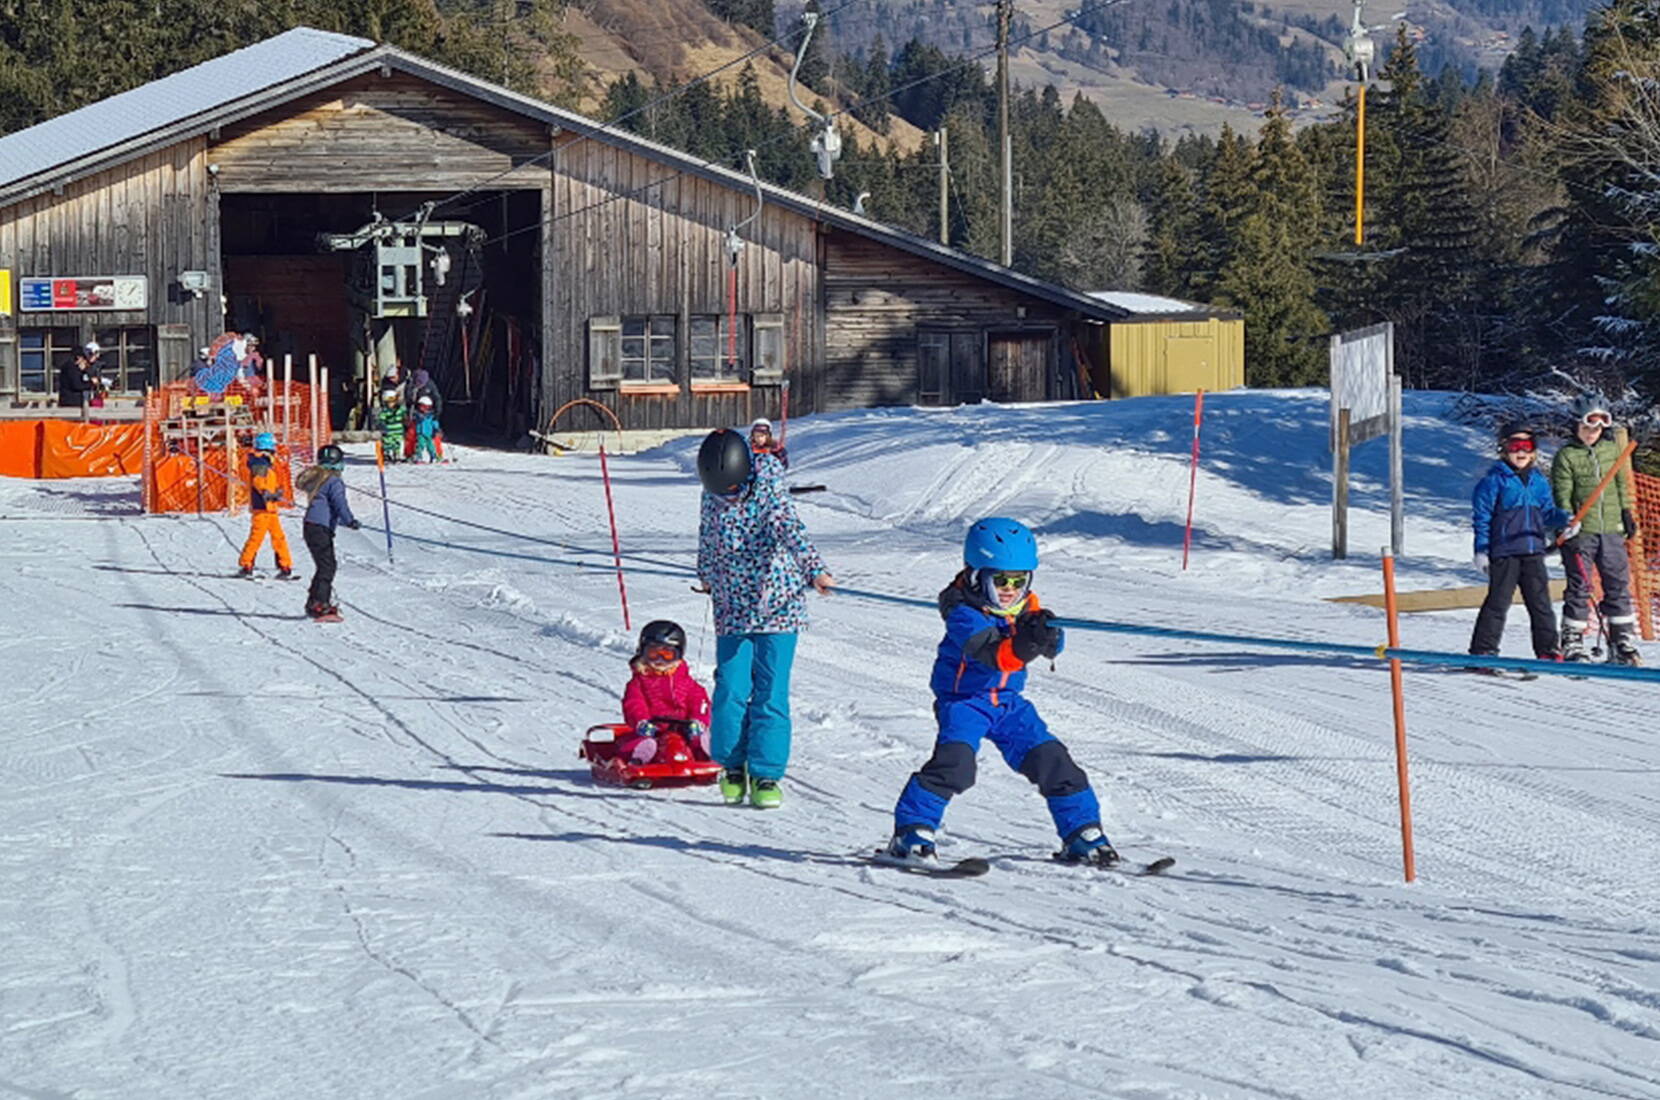 Familienausflug Skigebiet Rossberg im Simmental. Gemütlich, familienfreundlich und günstig präsentiert sich das Angebot des Ski- und Erholungsgebietes! Besonders von Familien geschätzt wird die Übersichtlichkeit des Skigebietes.